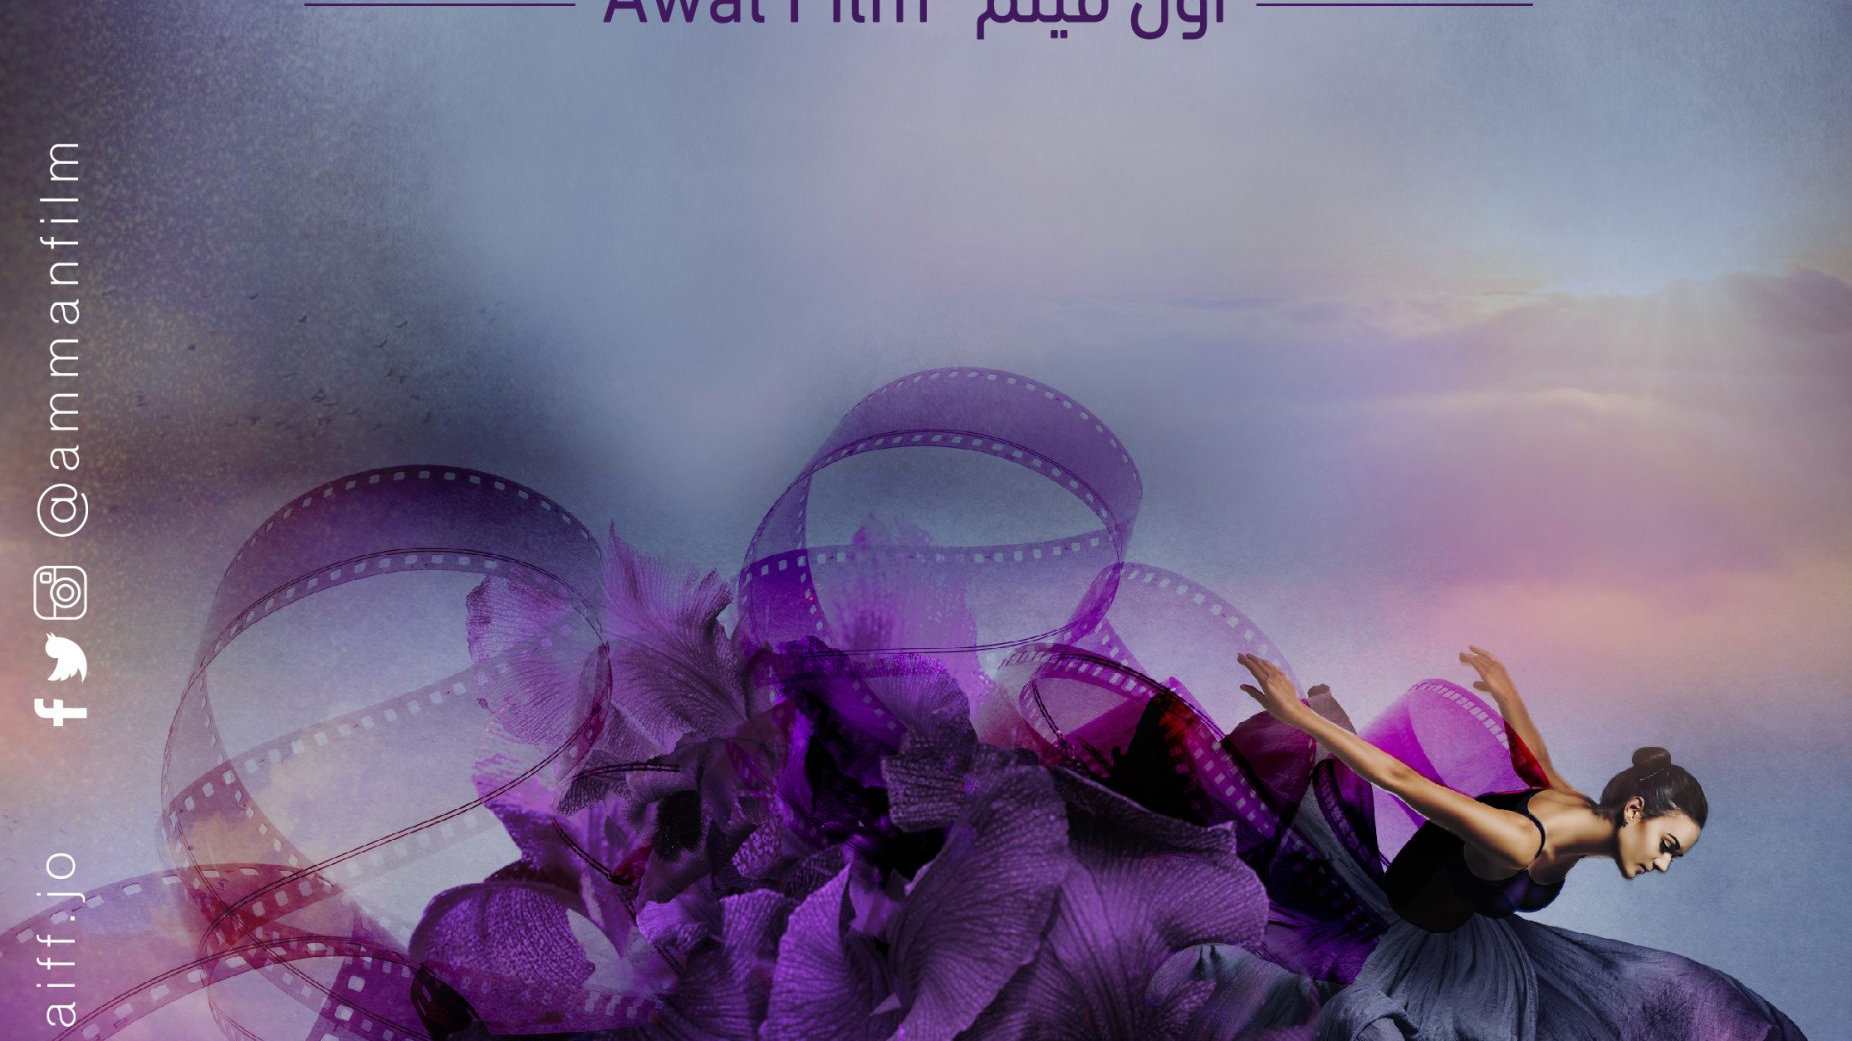 "جلدة" فيلم للمُخرج هادي شتات يُعرض في مهرجان عمان السينمائي الدولي